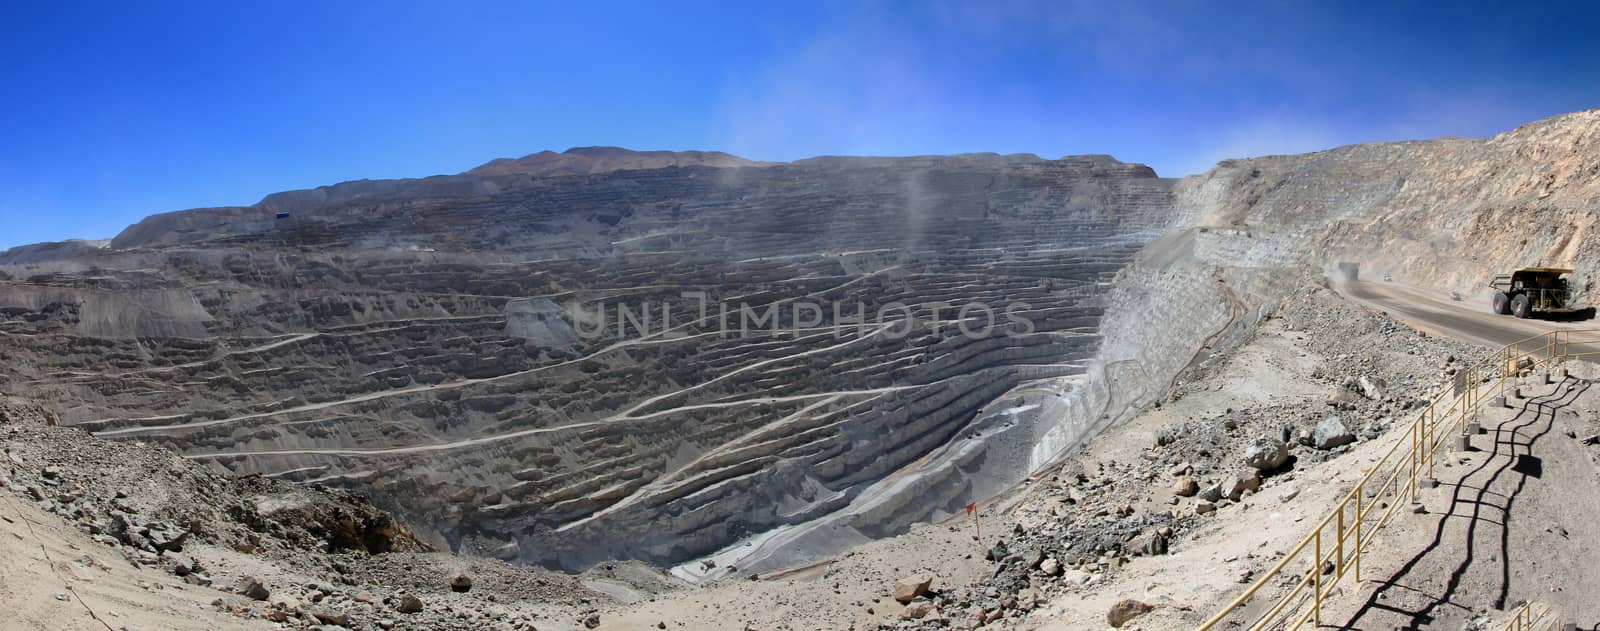 Chuquicamata, world's biggest open pit copper mine, Chile by cicloco